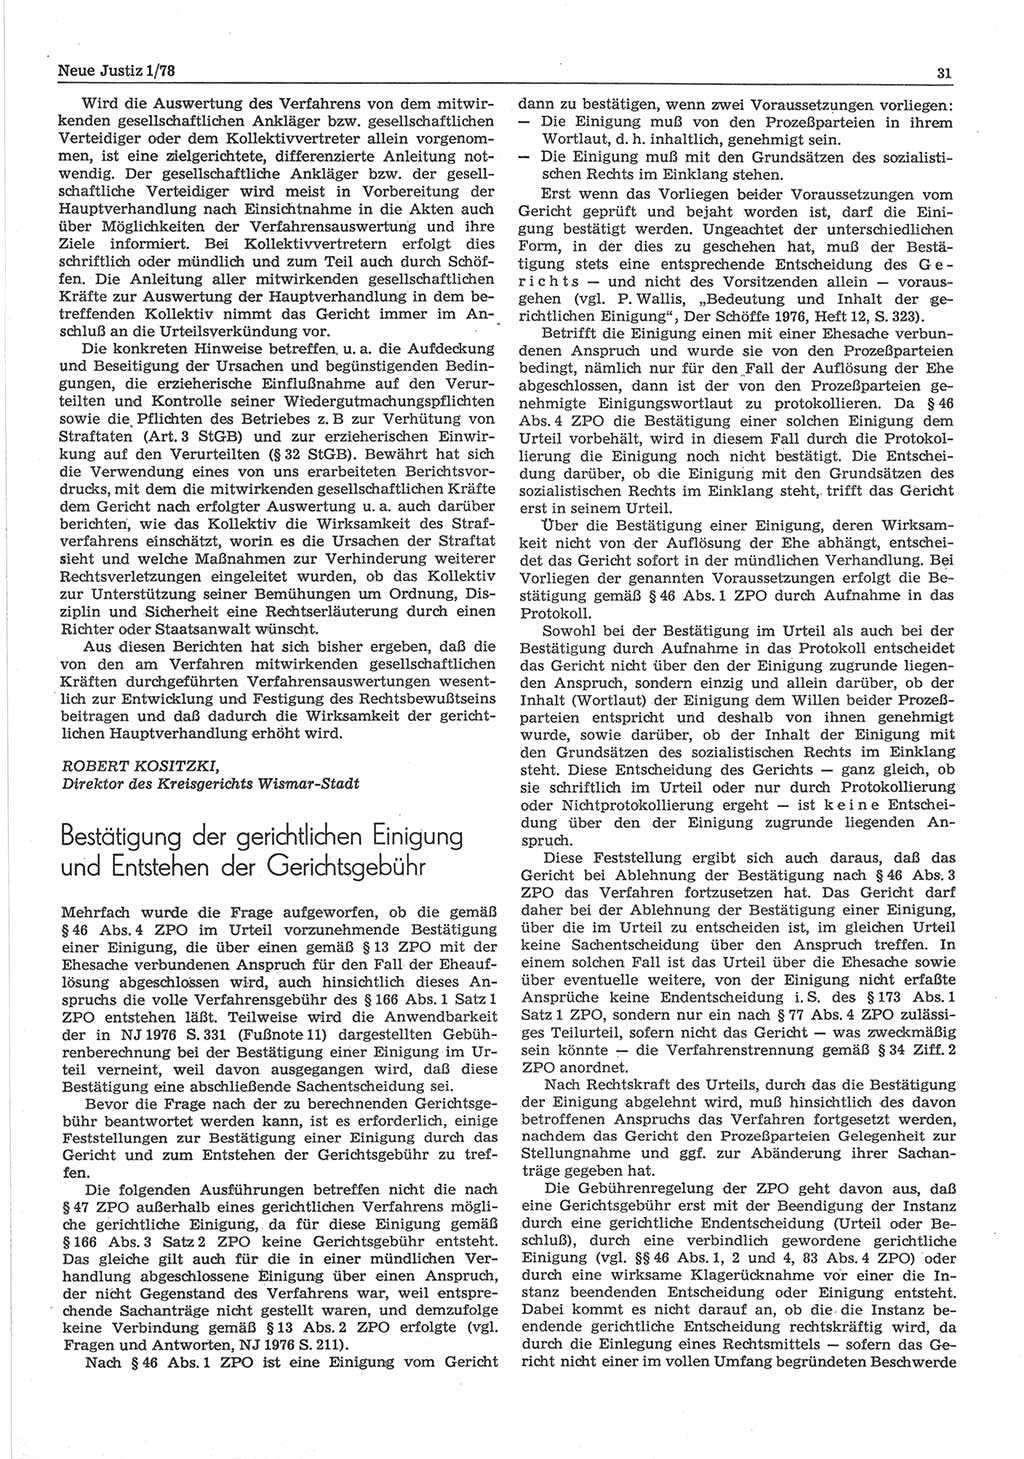 Neue Justiz (NJ), Zeitschrift für sozialistisches Recht und Gesetzlichkeit [Deutsche Demokratische Republik (DDR)], 32. Jahrgang 1978, Seite 31 (NJ DDR 1978, S. 31)